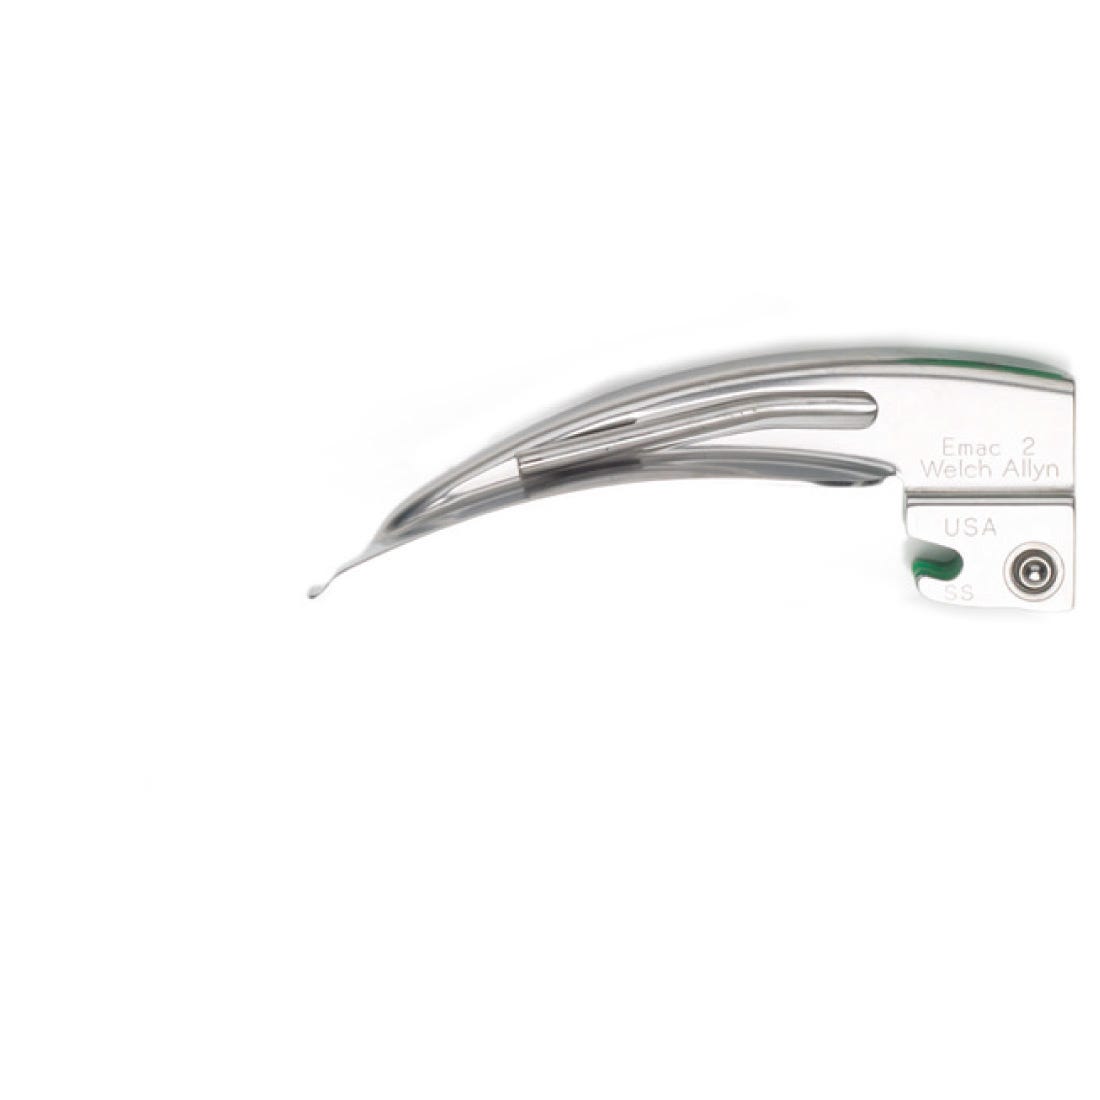 Welch Allyn Standard Fitting FiberOptic Laryngoscope Blades - Macintosh, Size 2, Fits Welch Allyn Fiberoptic Handle